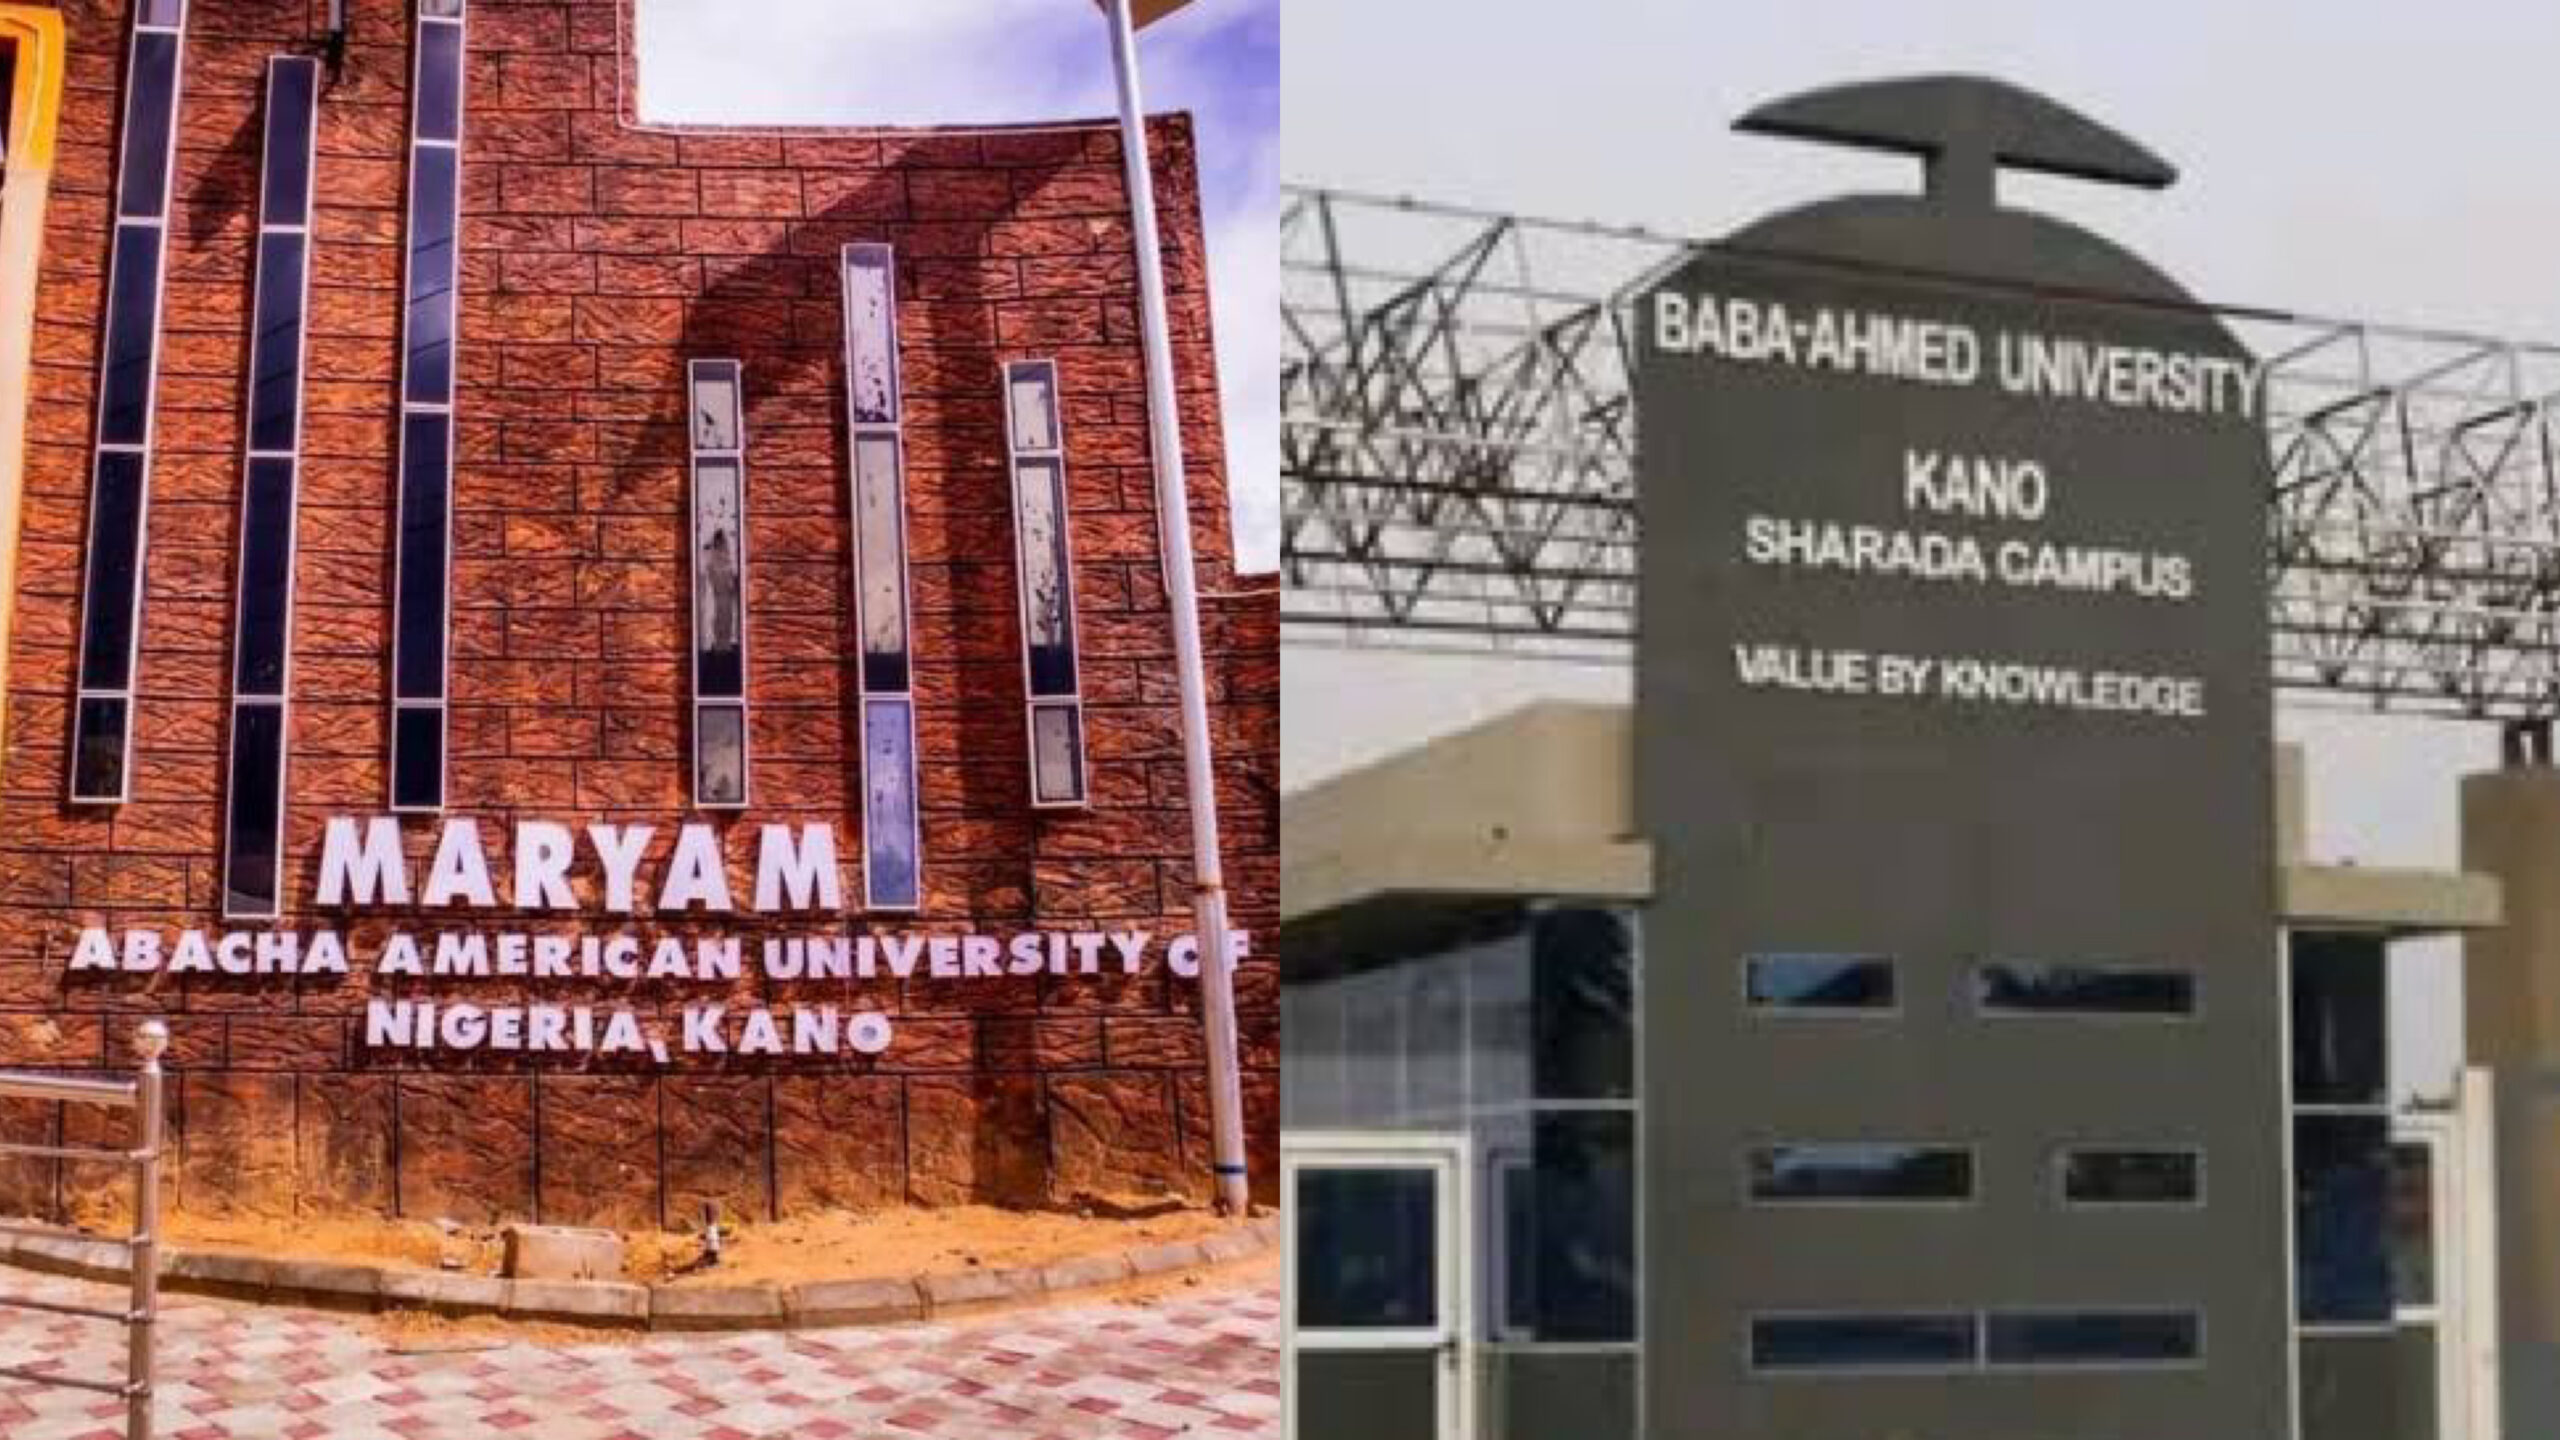 Maryam Abacha American University of Nigeria; Baba Ahmed University